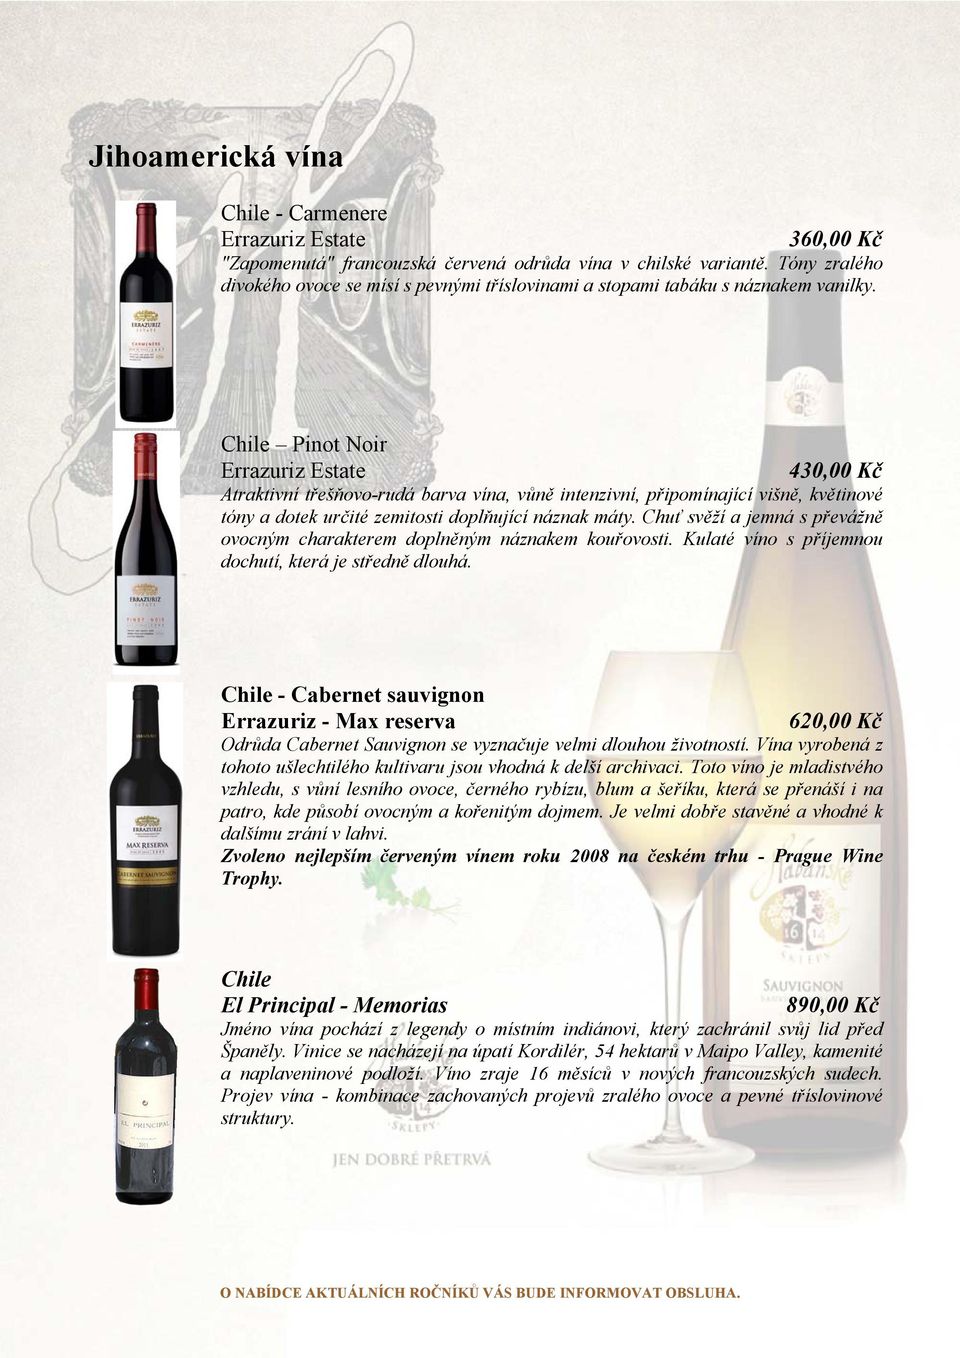 Chile Pinot Noir Errazuriz Estate 430,00 Kč Atraktivní třešňovo-rudá barva vína, vůně intenzivní, připomínající višně, květinové tóny a dotek určité zemitosti doplňující náznak máty.